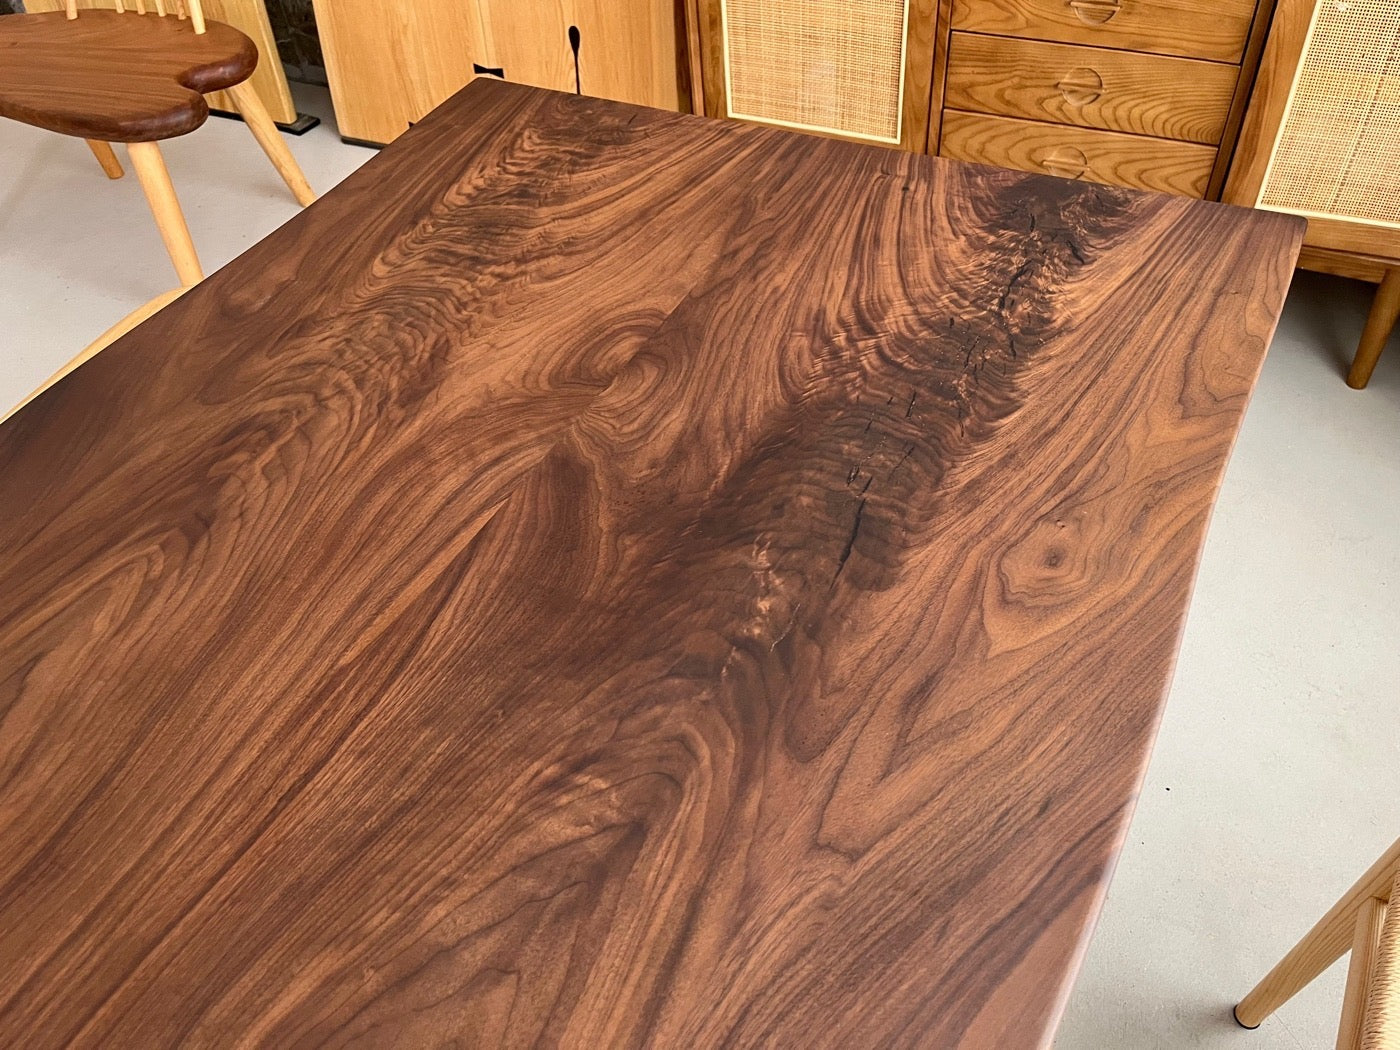 لوح الجوز الأمريكي الأسود، لوح الخشب ذو الحافة الحية، طاولة فريدة من نوعها